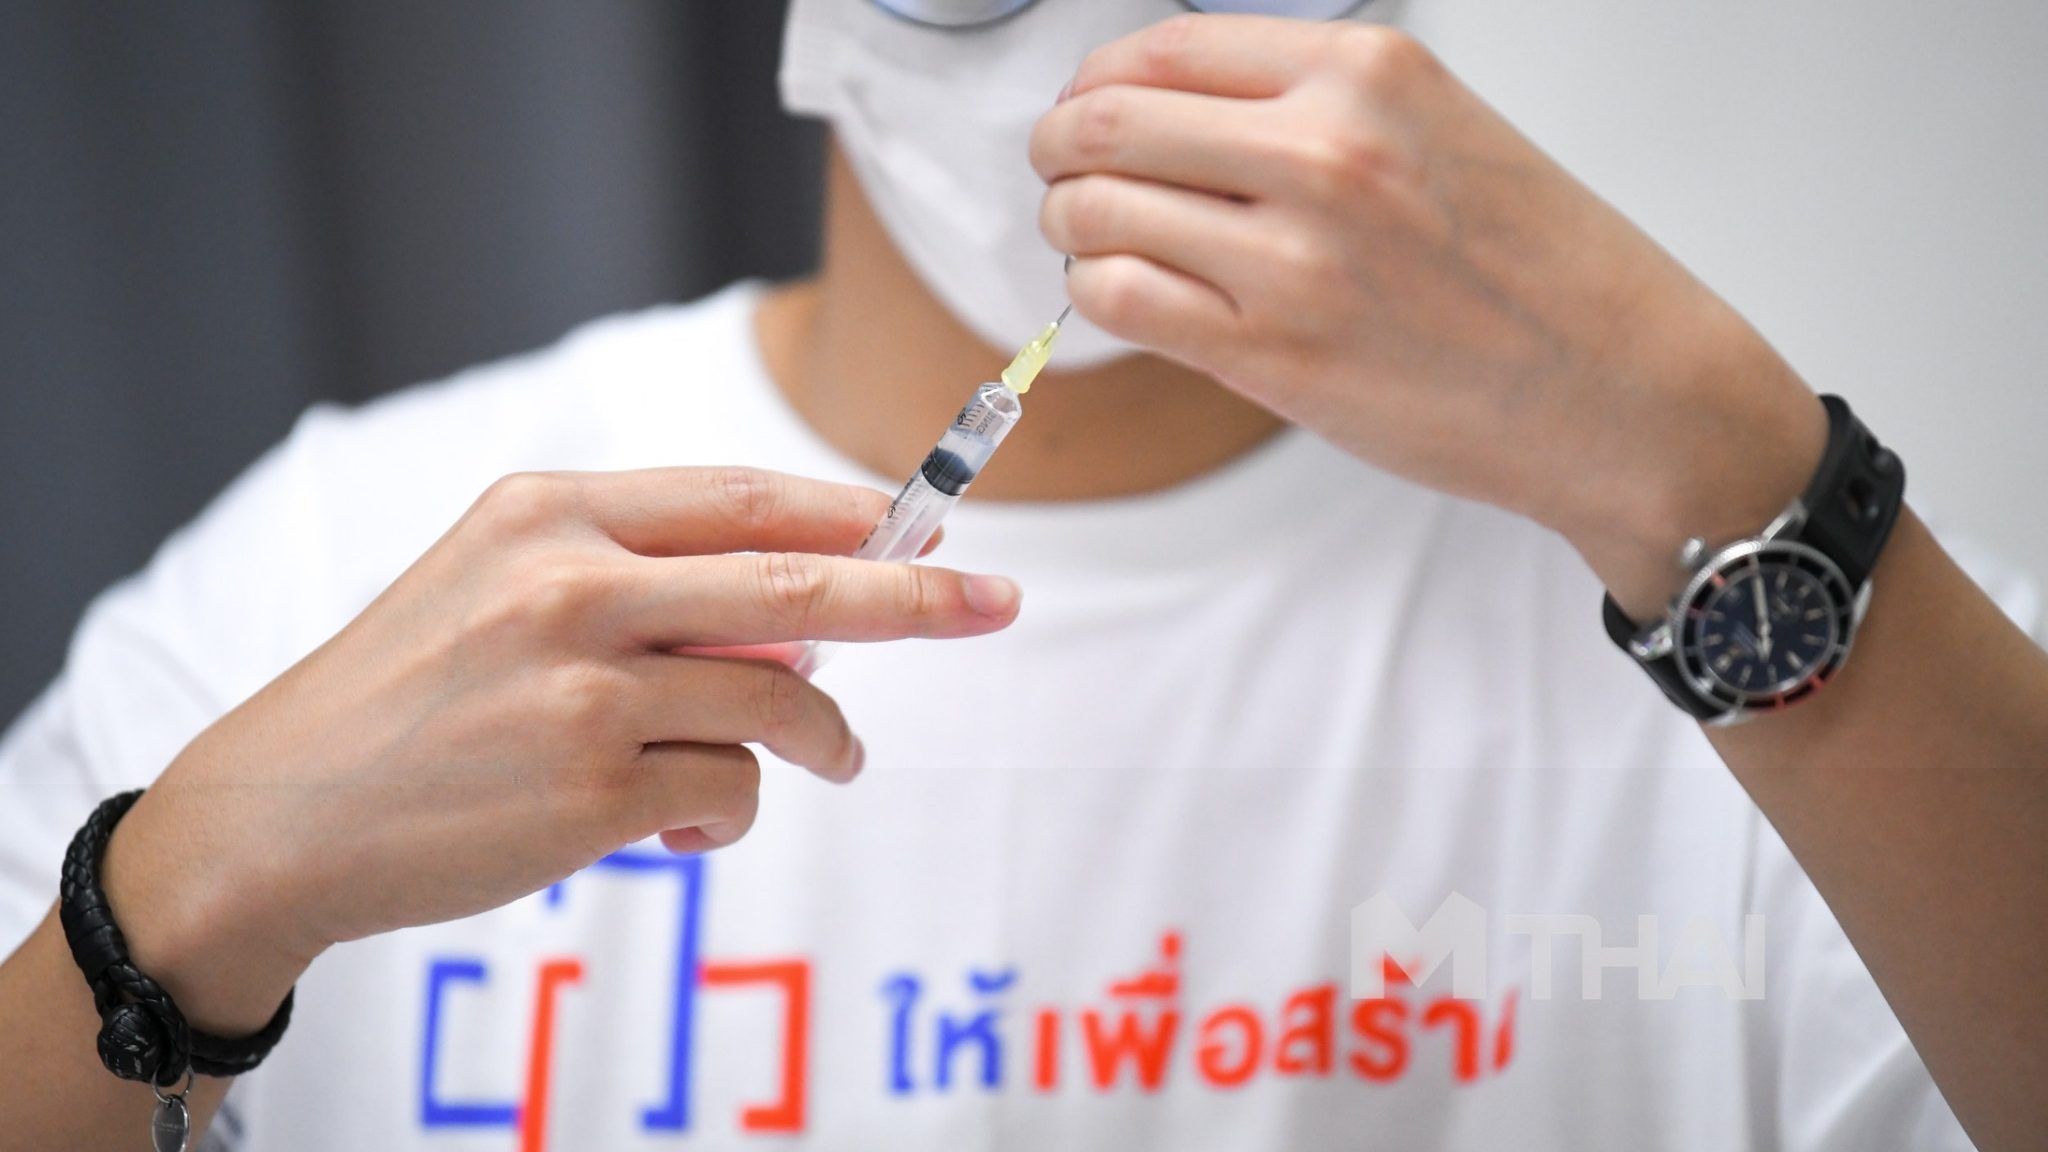 เซเว่นฯ เปิด 3,314 สาขาทั่ว กทม. รับลงทะเบียนฉีดวัคซีนโควิด เริ่ม 27 พ.ย.นี้